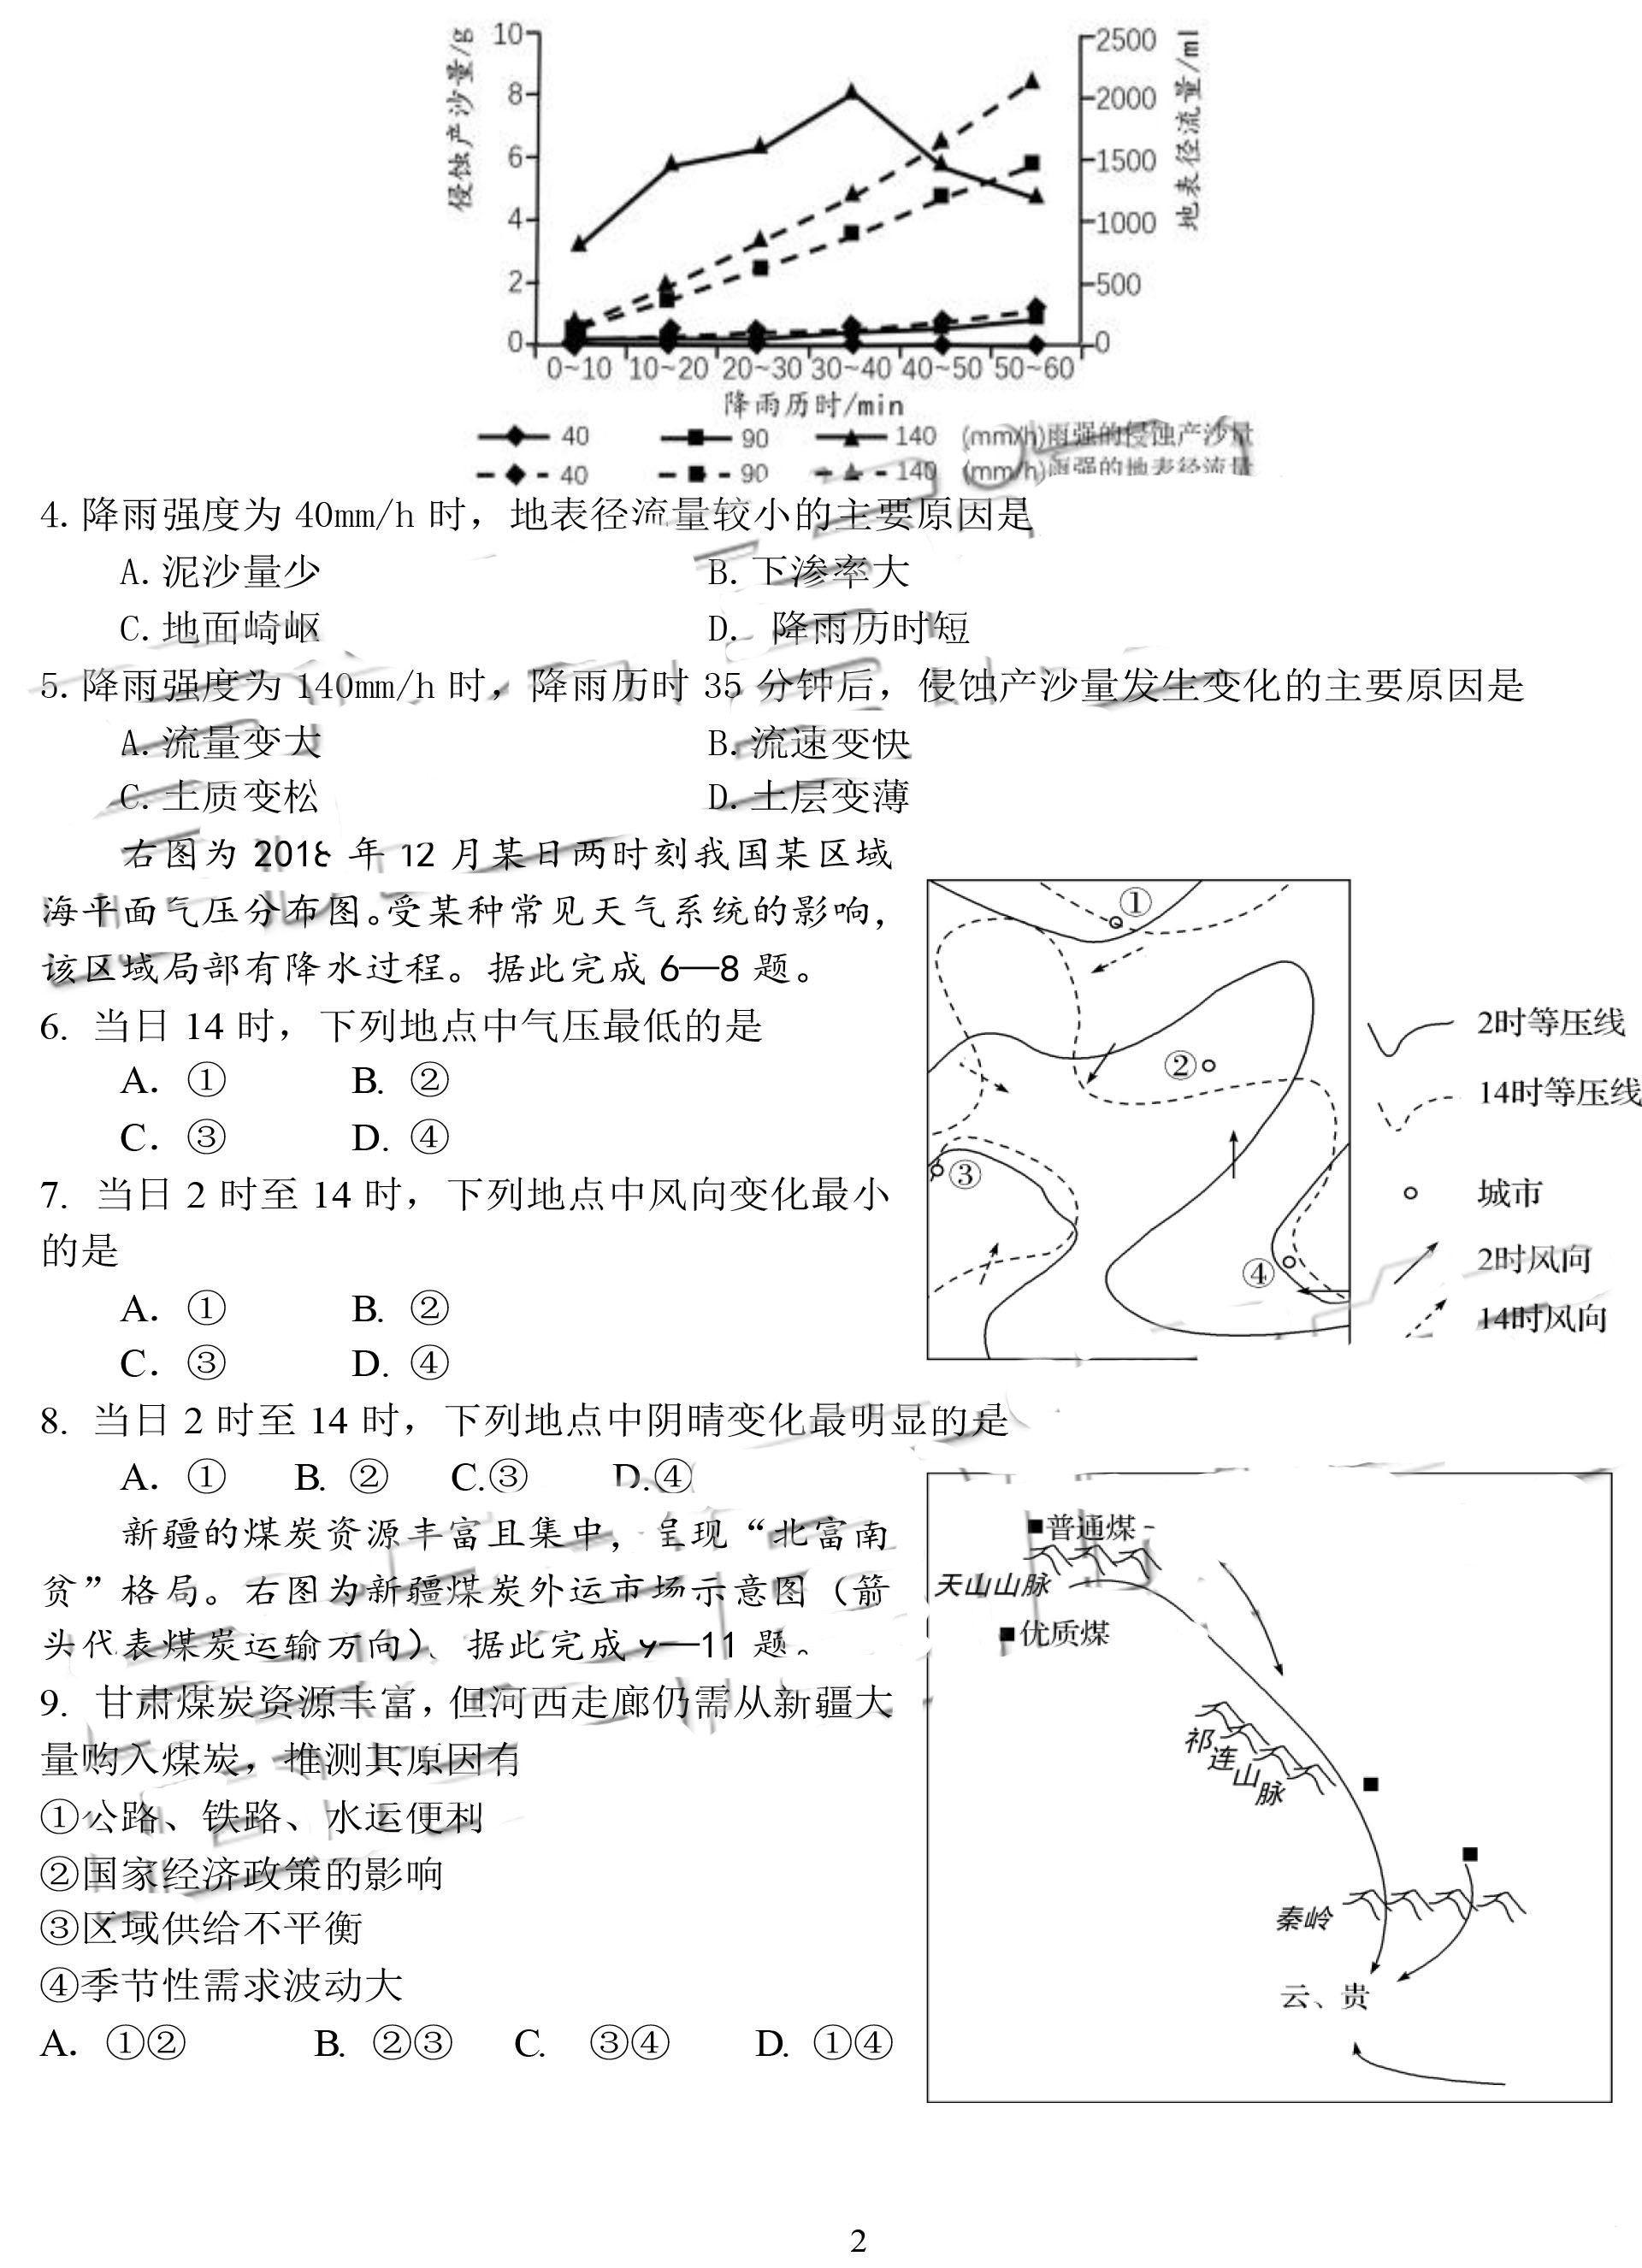 四川省成都七中2019年高三年级二诊模拟考试试题(文综 图片版)